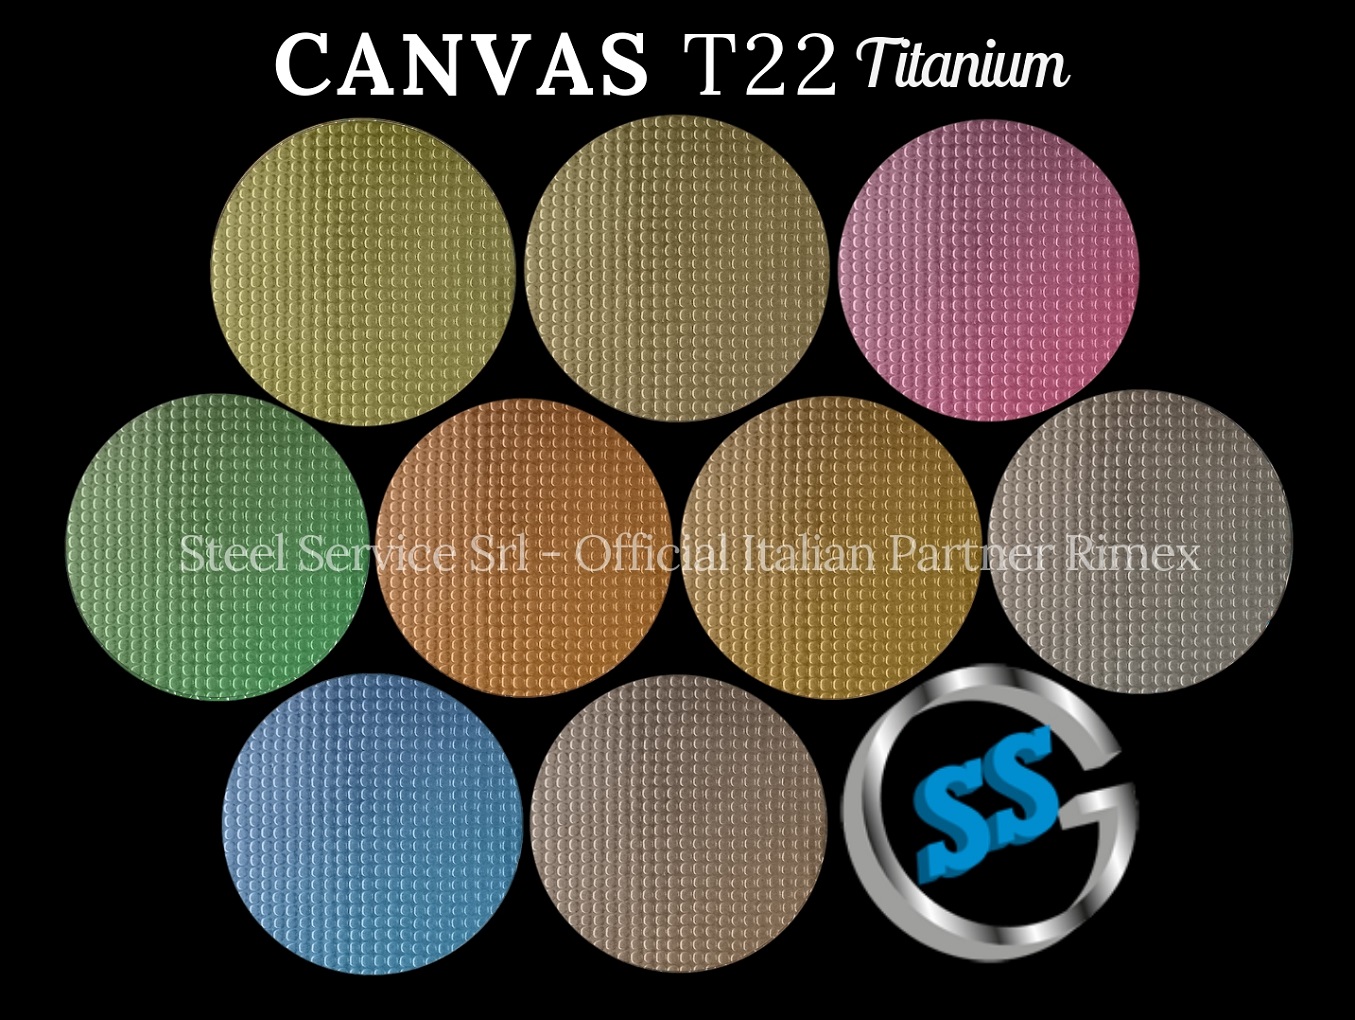 Lamiere bugnate decorative colorate, Palette varianti colorate inox T22 Titanium delle lamiere inox CANVAS, inox decorato CANVAS